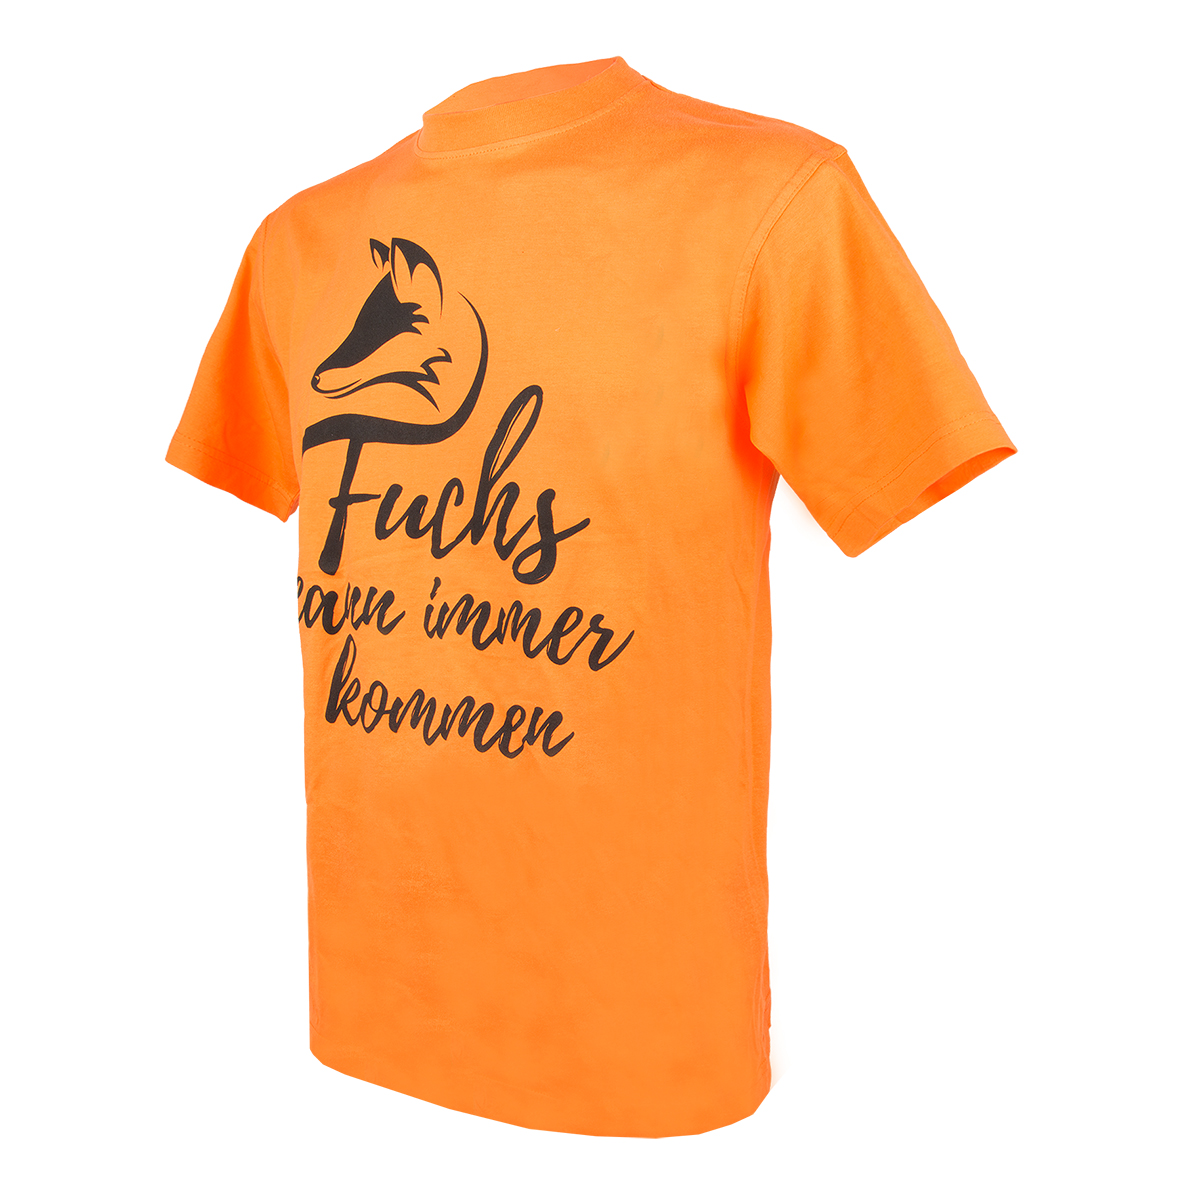 DJZ Edition: T-Shirt "Fuchs kann immer kommen" Orange im Pareyshop